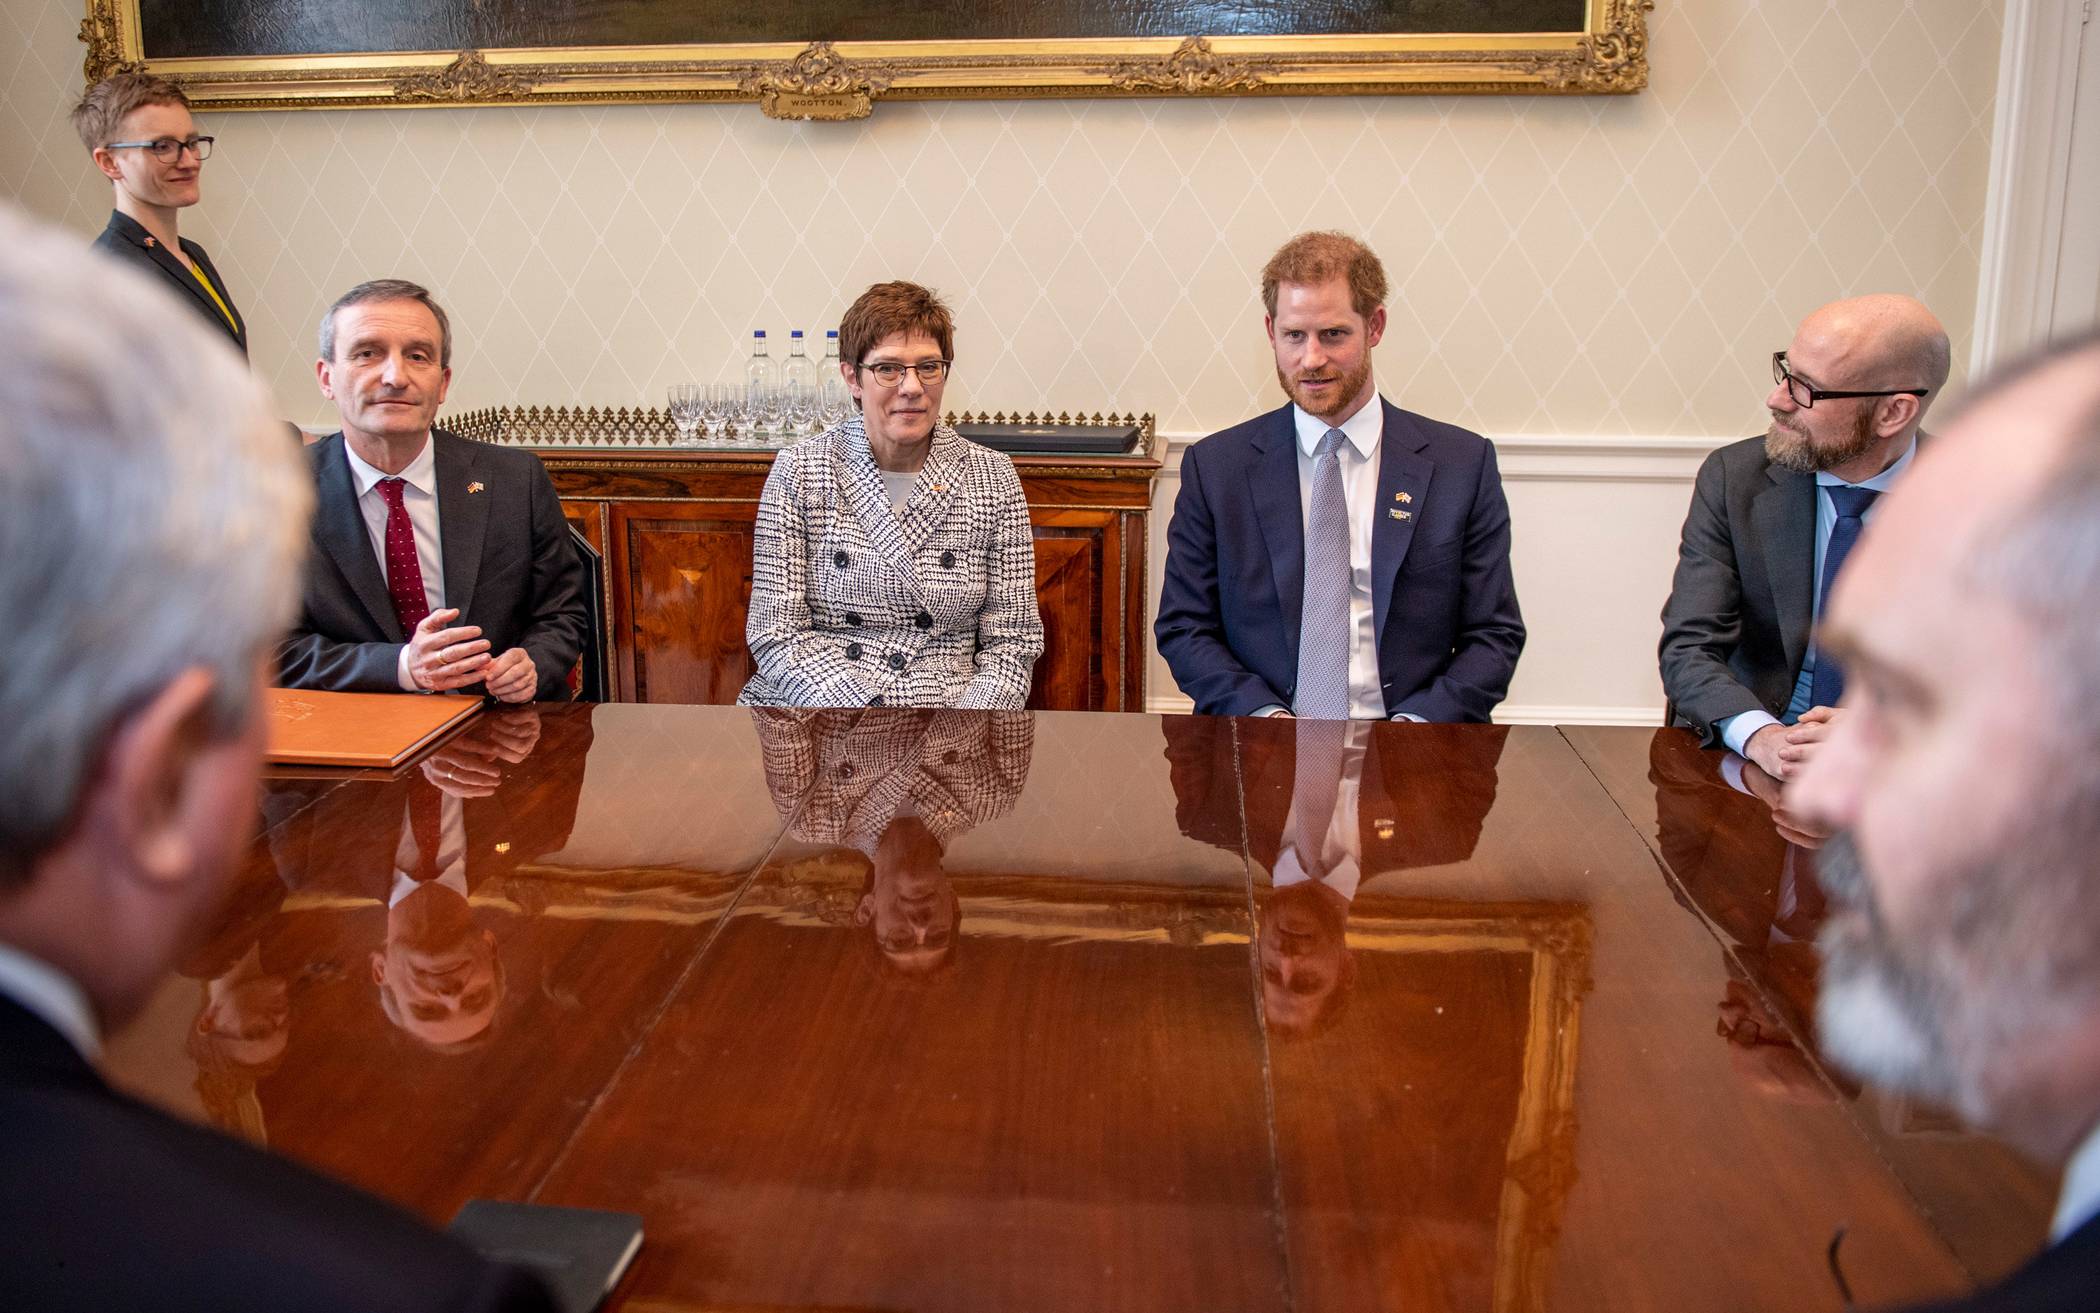  Prinz Harry, Duke of Sussex, Verteidigungsministerin Annegret Kramp-Karrenbauer und Düsseldorfs Oberbürgermeister Thomas Geisel im Buckingham Palace. 